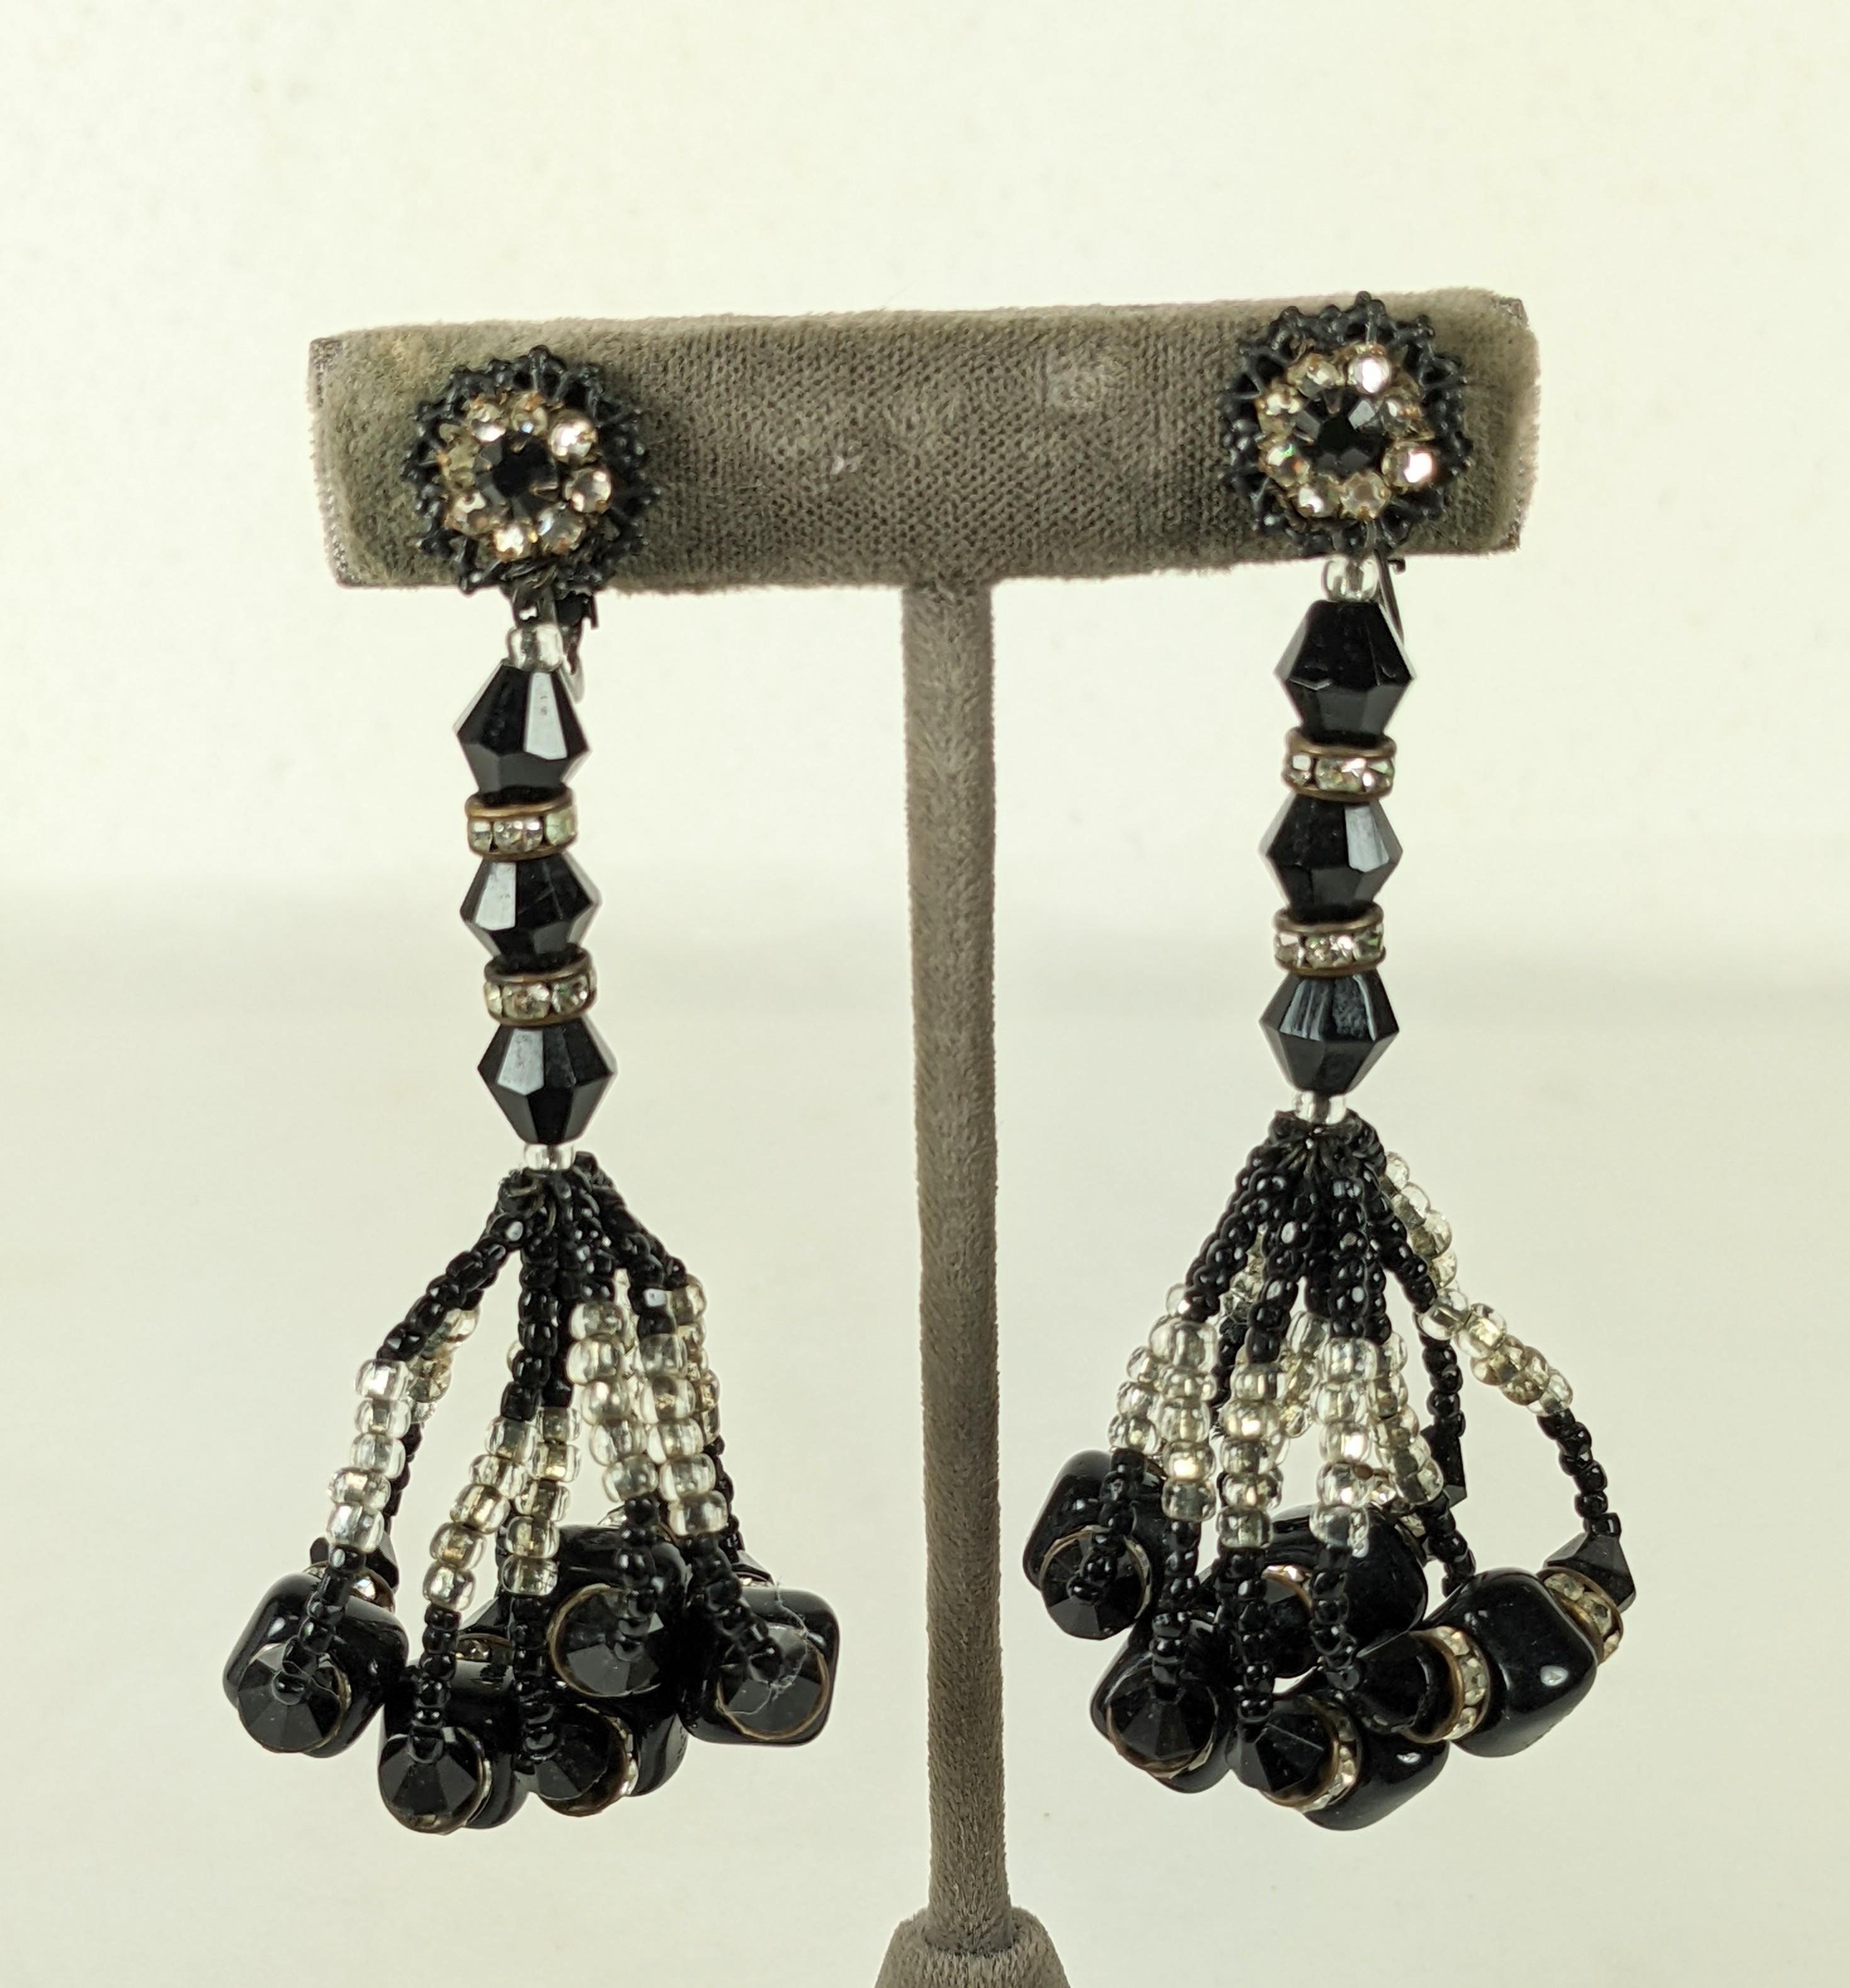 Boucles d'oreilles à pompon en jais et perles de rocaille Miriam Haskell des années 1950. Des perles en jais noir avec des rondelles pavées sont utilisées pour construire une longue boucle d'oreille avec 5 boucles de perles de rocaille en argent et